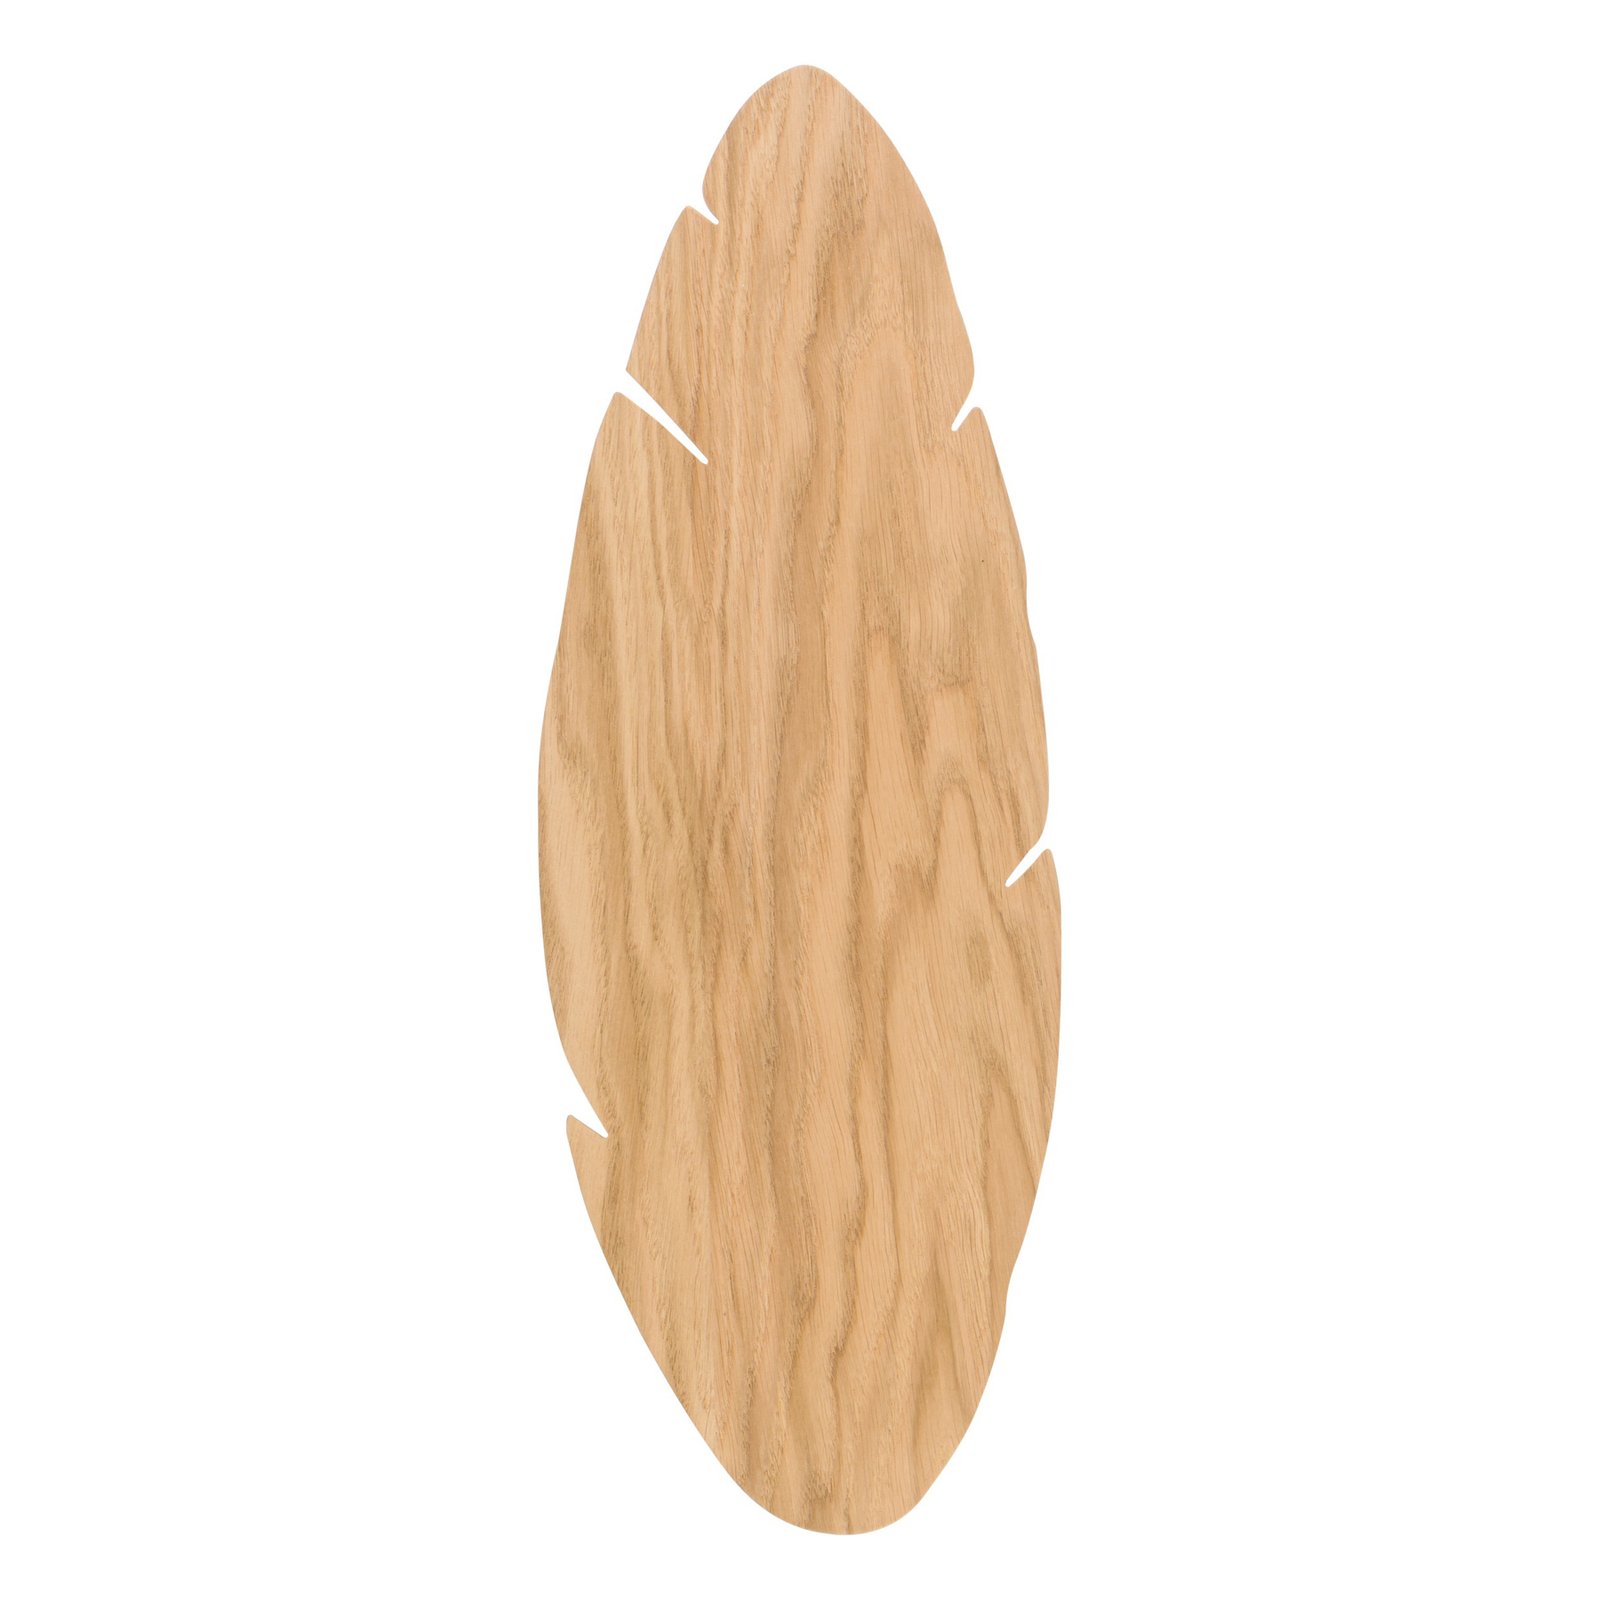 Envostar kinkiet Lehti, kształt liścia, jasne drewno, 51 x 18 cm